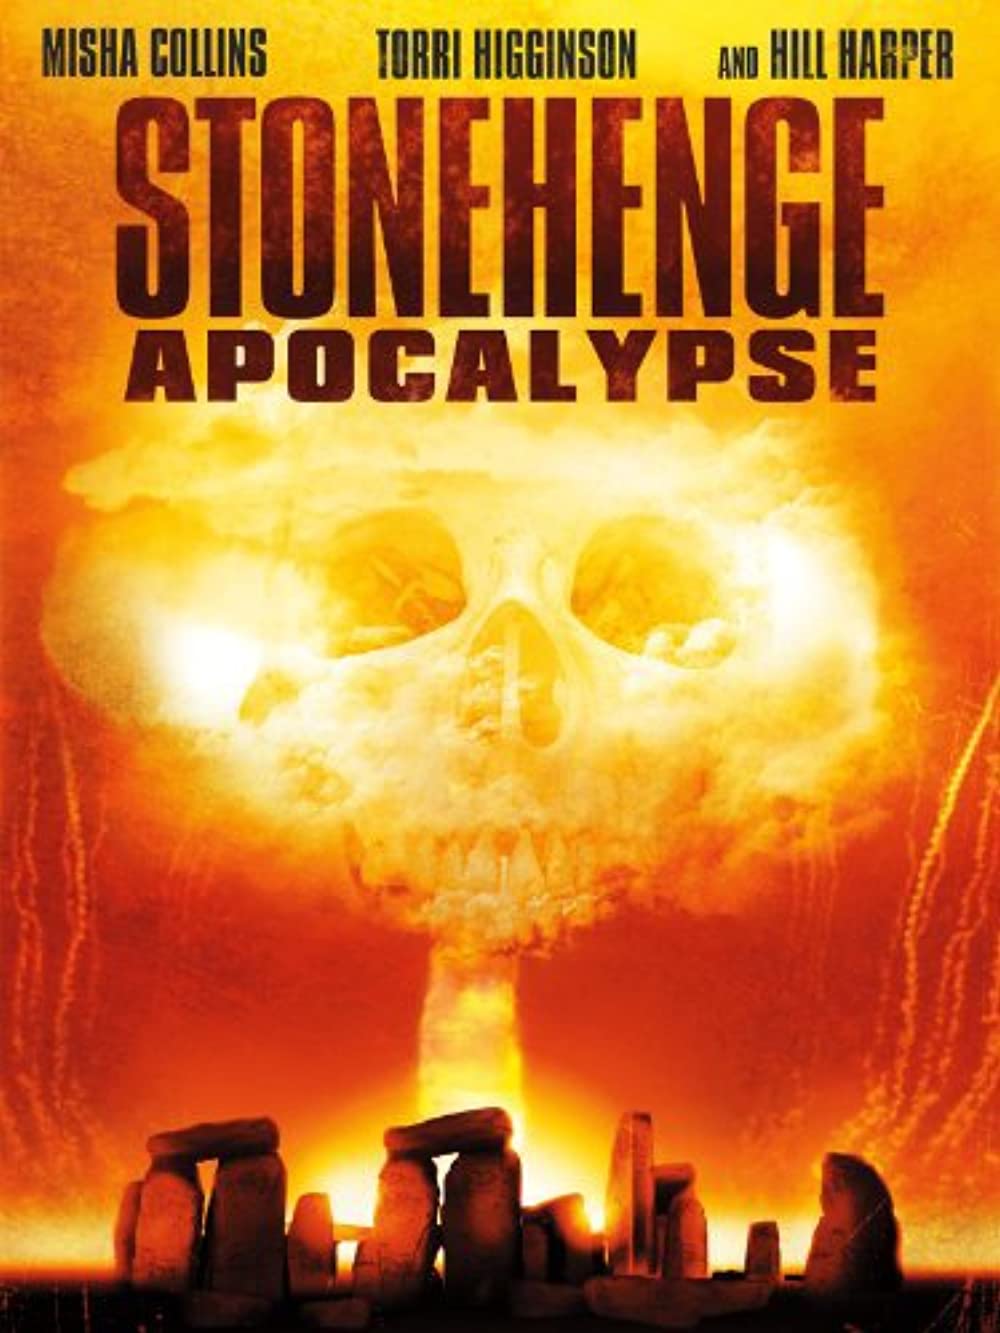 Download Stonehenge Apocalypse Movie | Stonehenge Apocalypse Hd